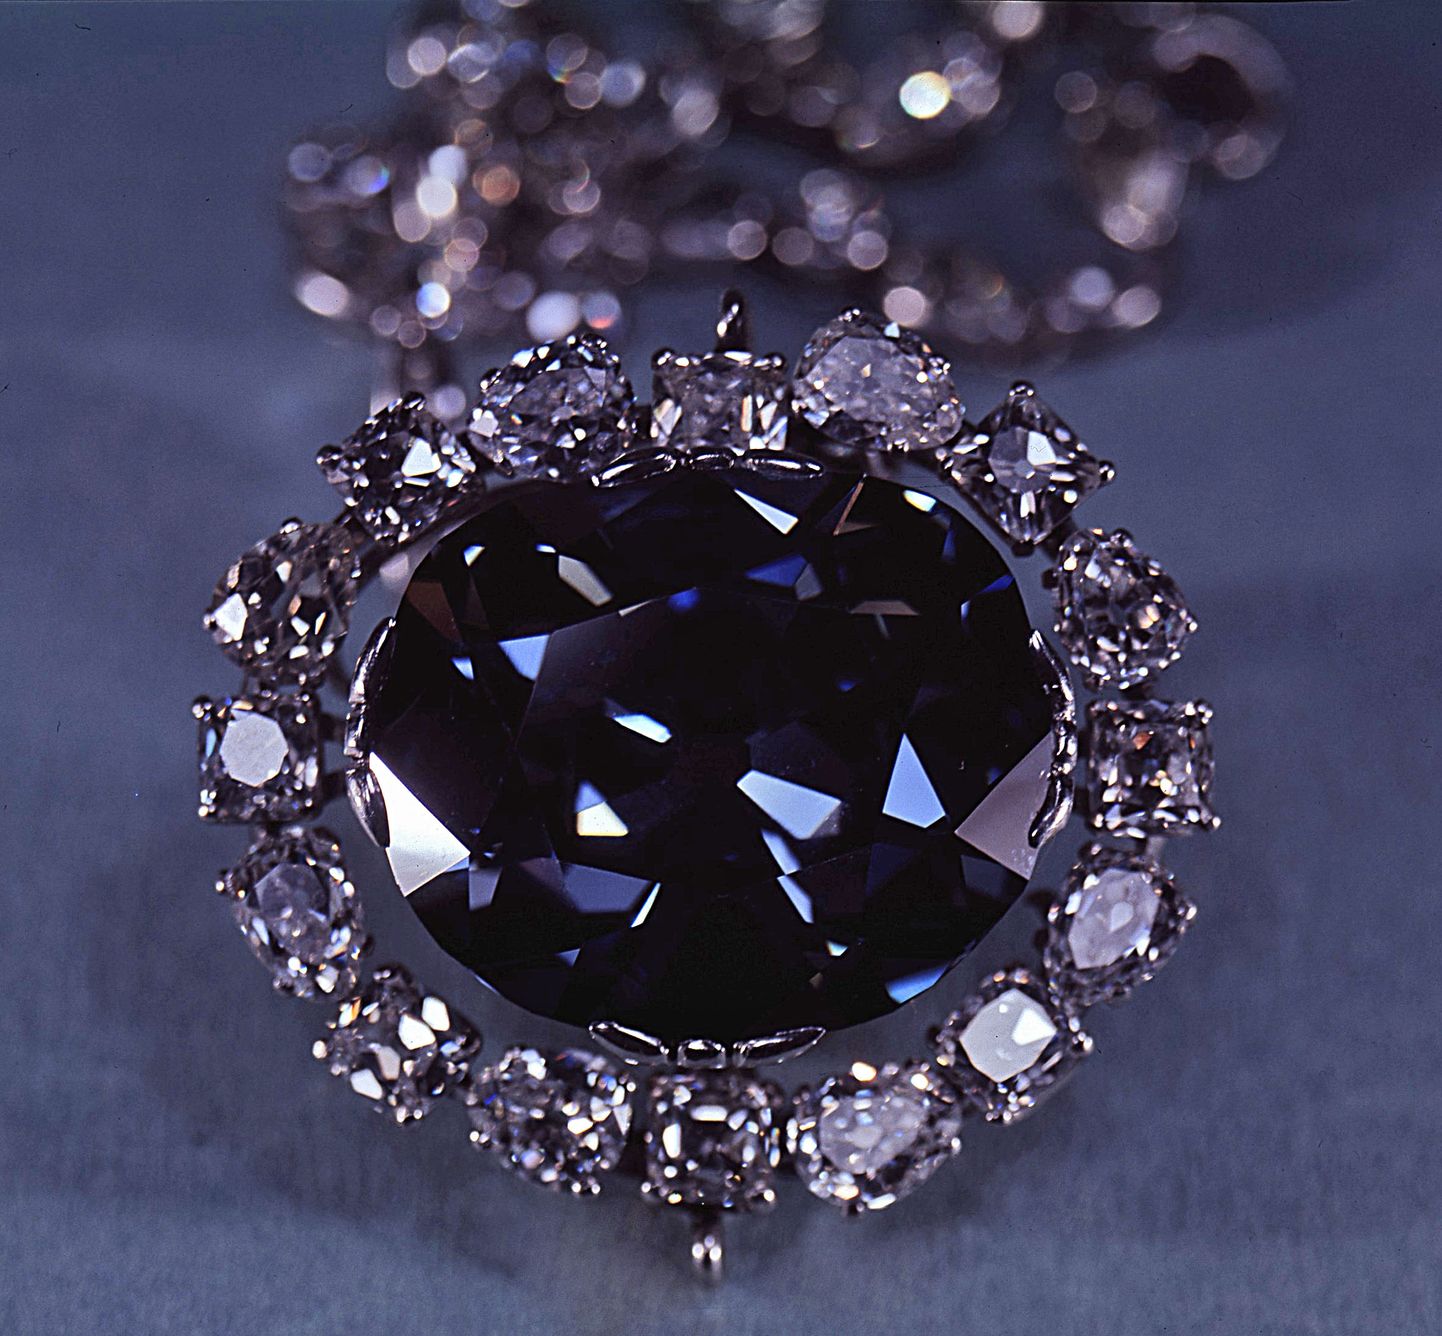 Sinine Hope Diamond on väärt umbes veerand miljardit eurot. Foto on illustratiivne.